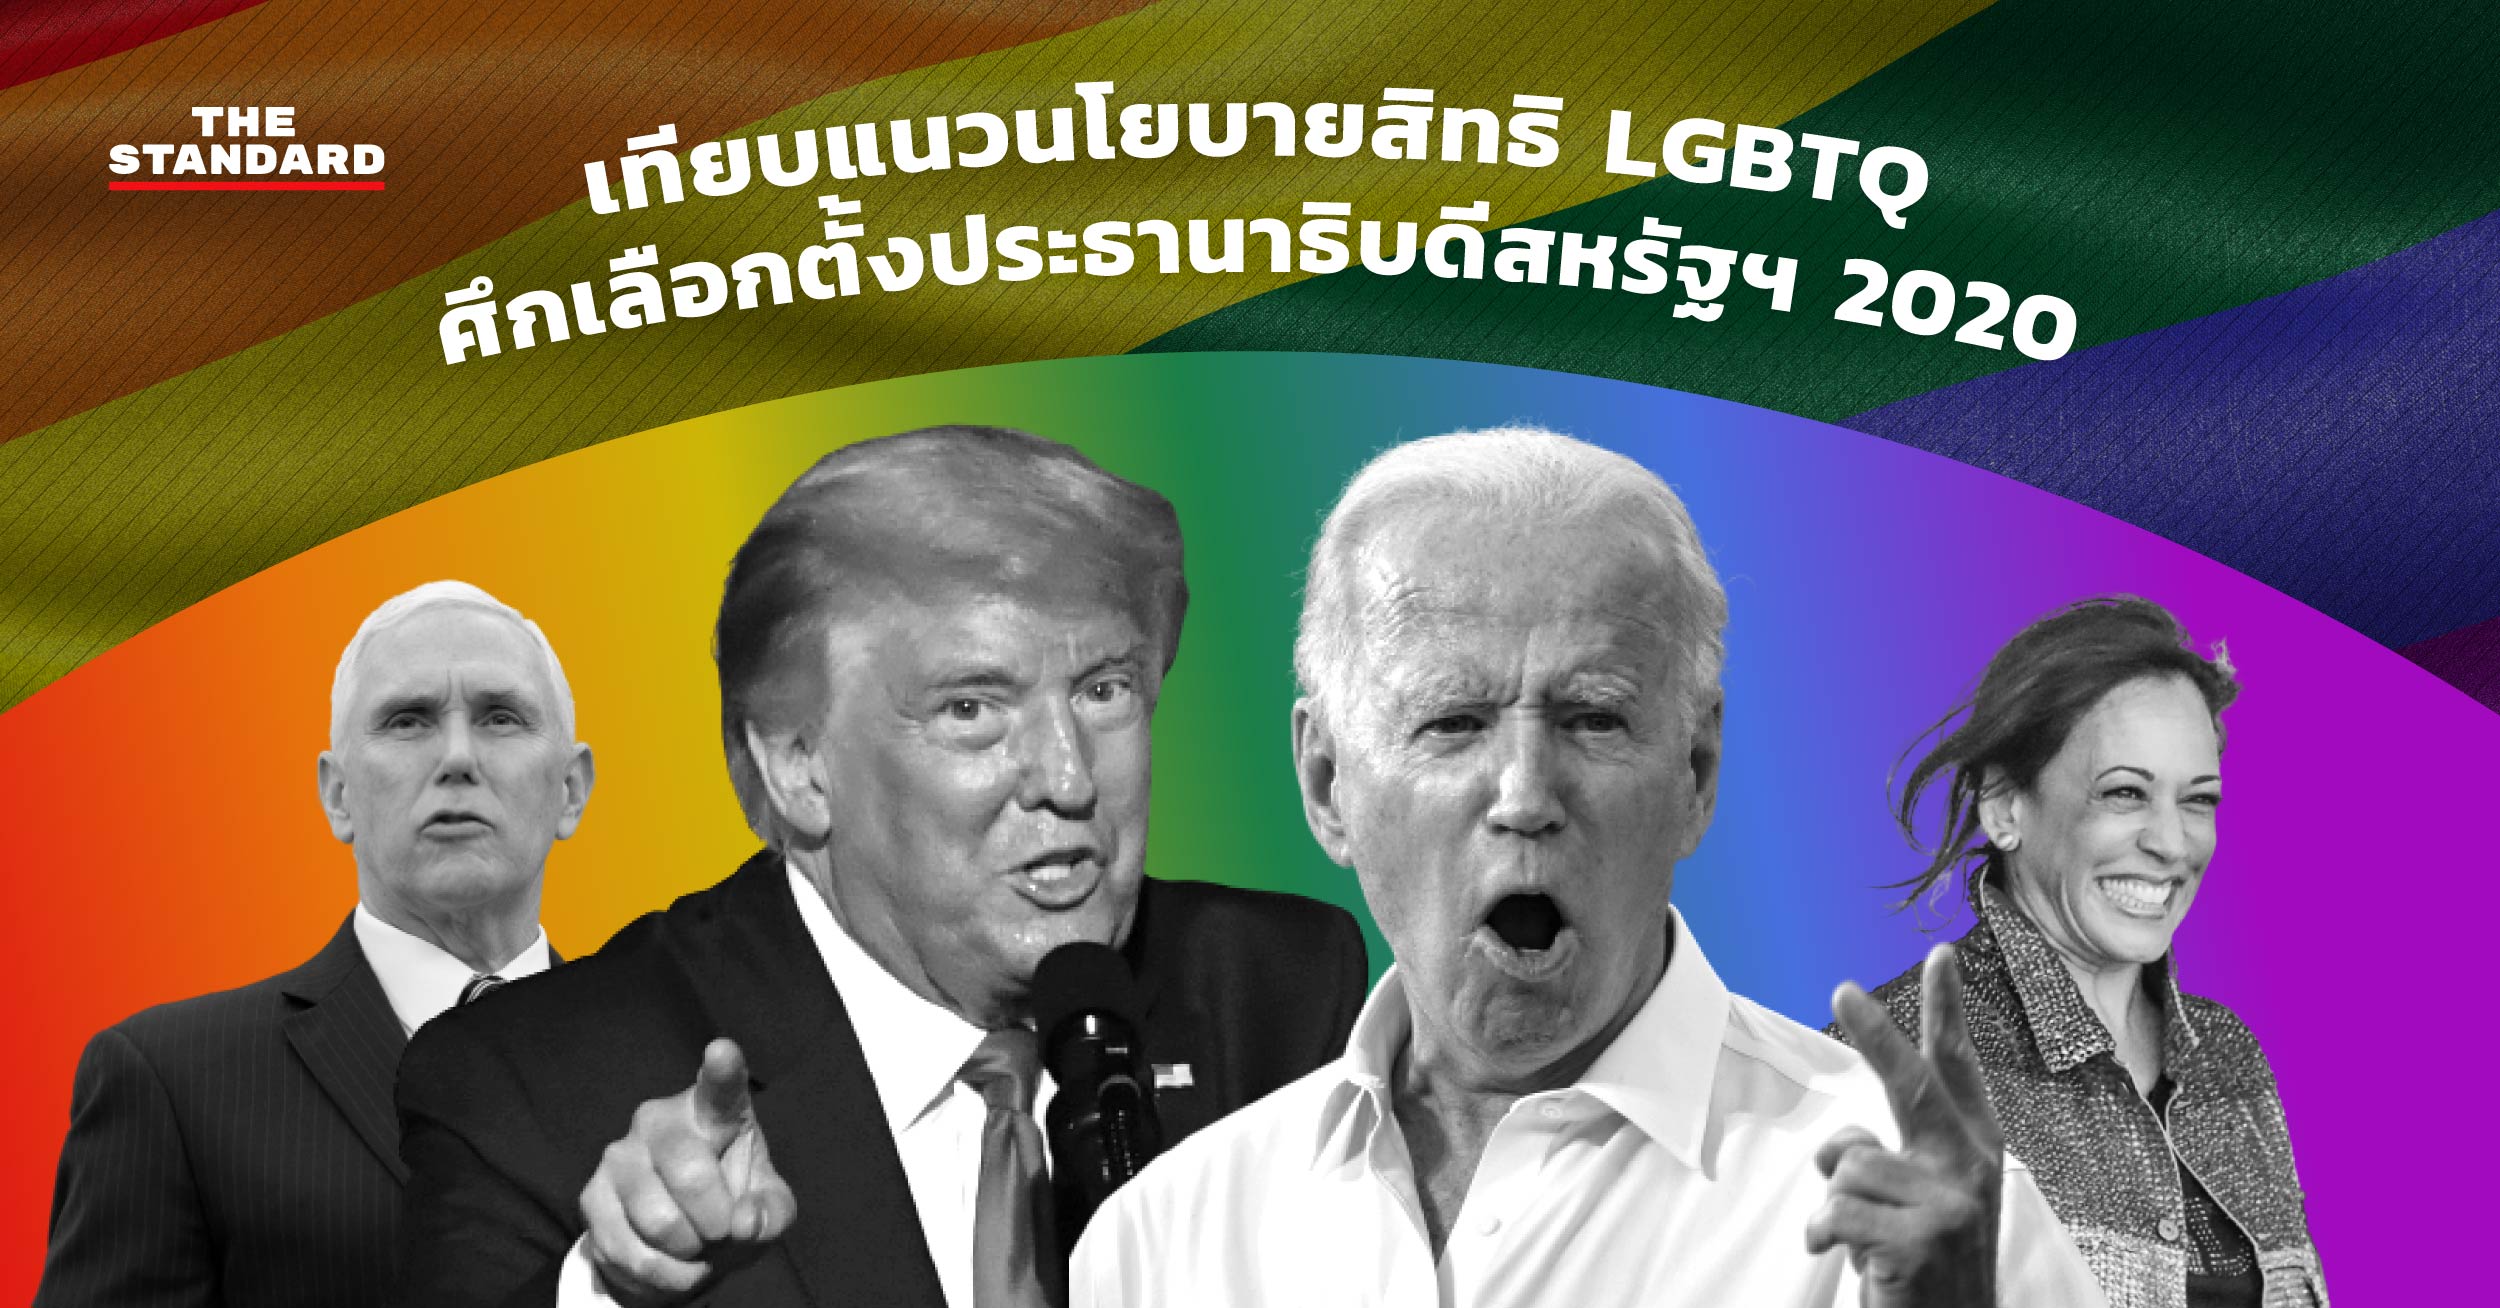 เทียบแนวนโยบายสิทธิ LGBTQ ศึกเลือกตั้งประธานาธิบดีสหรัฐฯ 2020